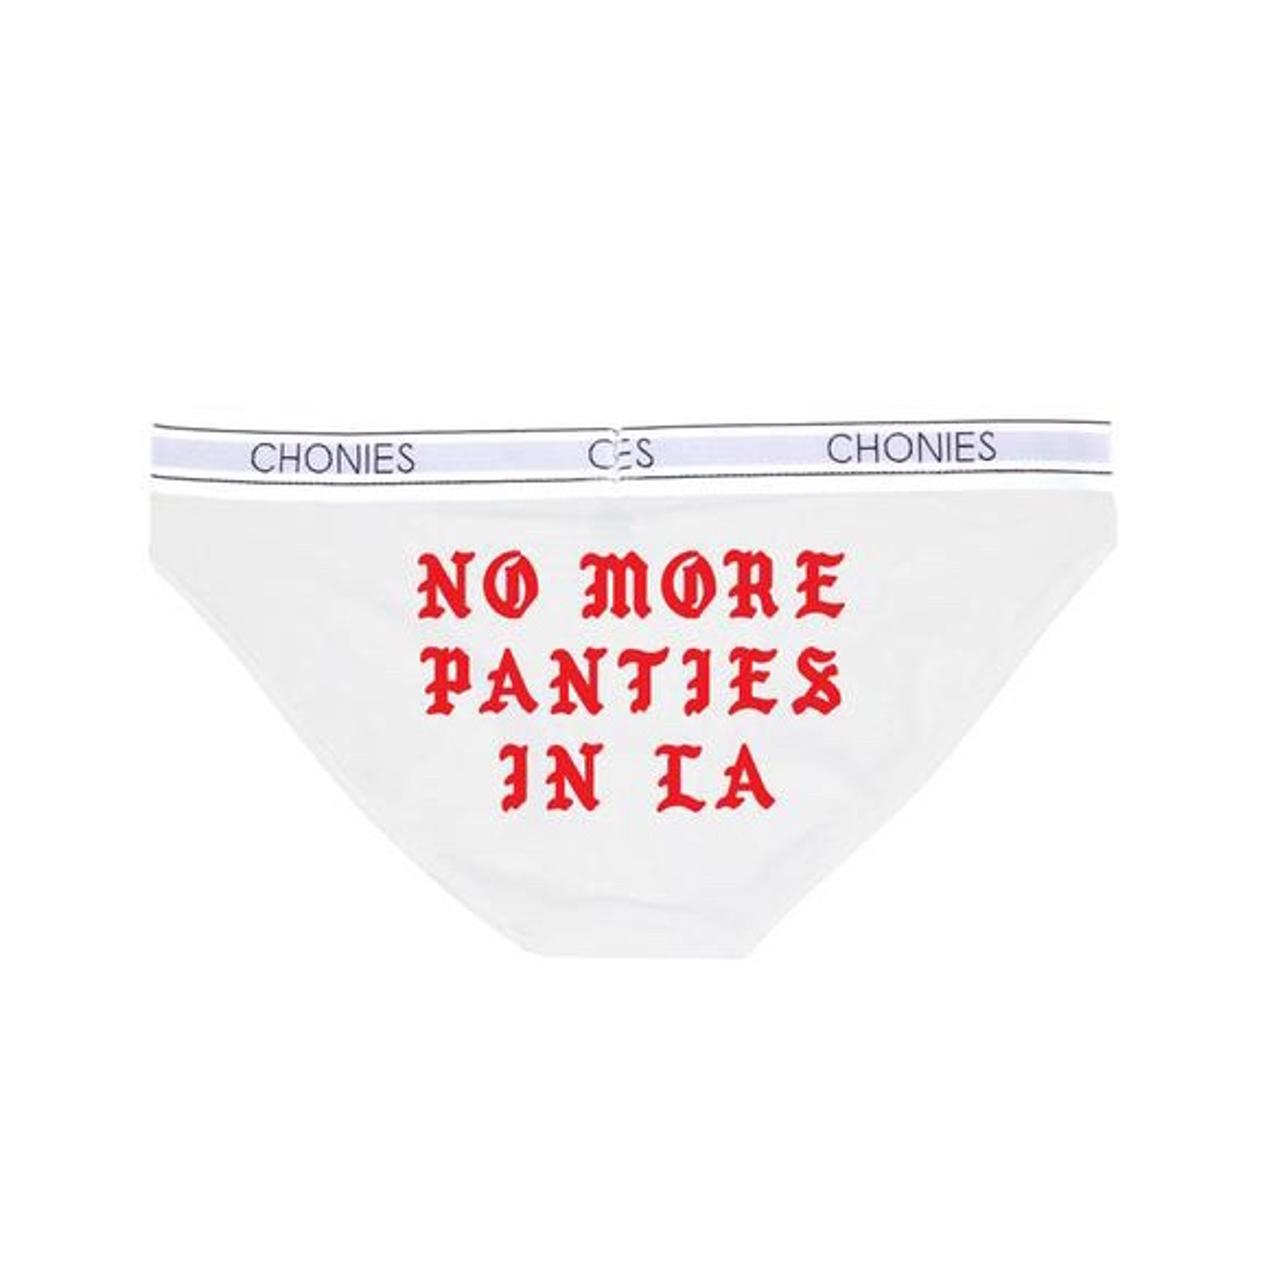 Underwear Chonies -  Australia